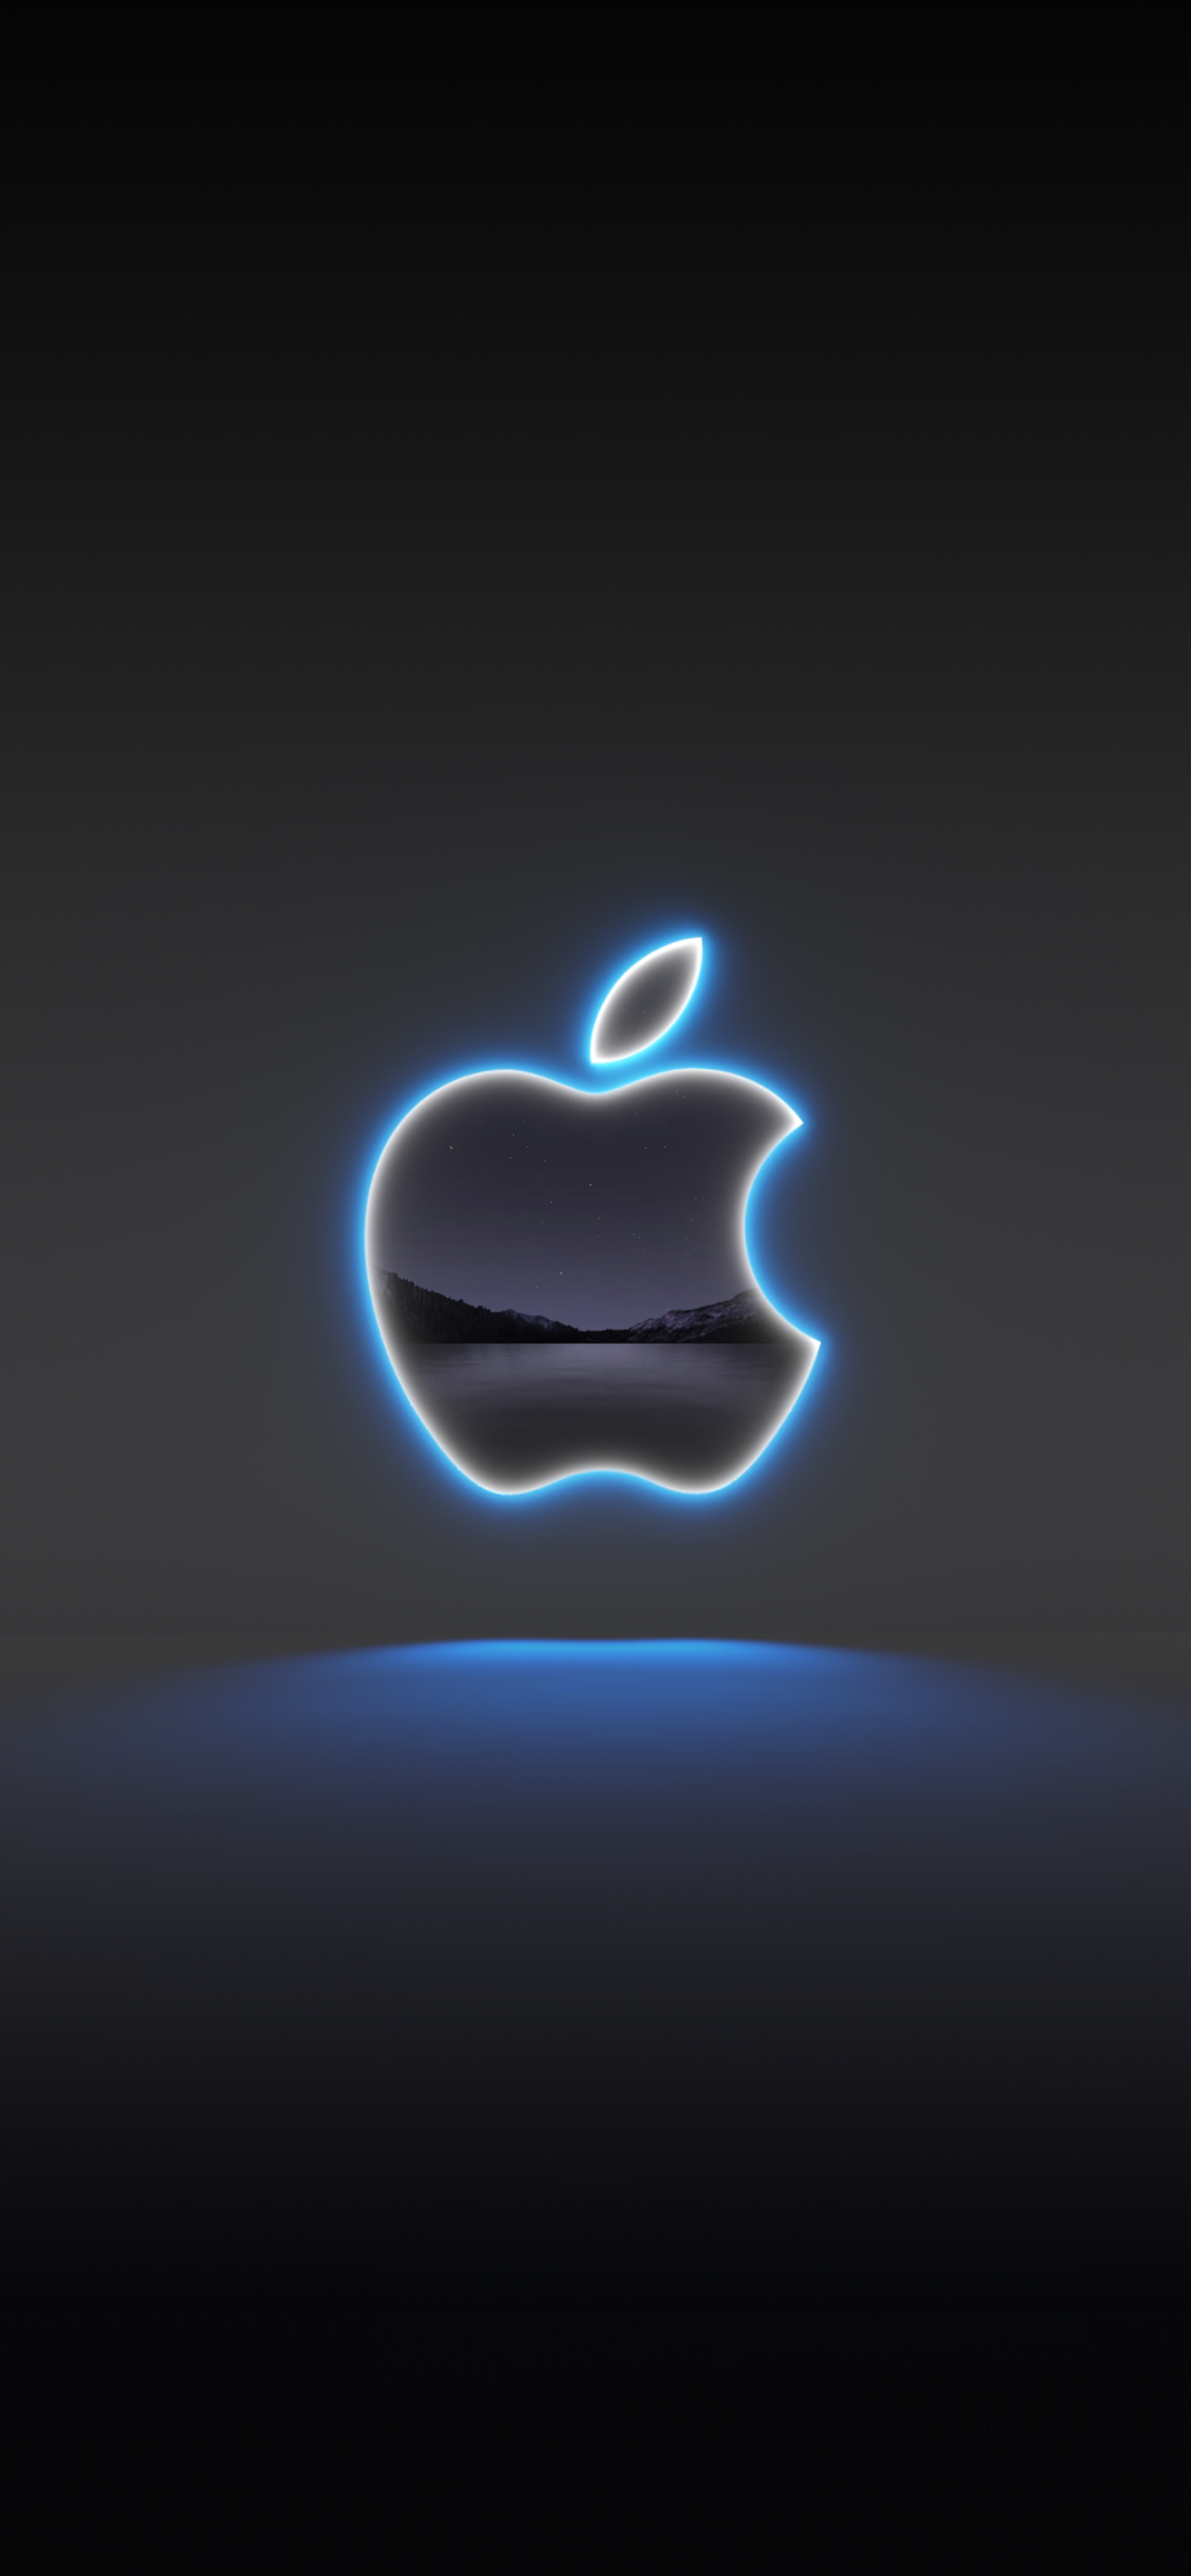 2021苹果秋季发布会壁纸下载 还有长沙首家Apple Store壁纸